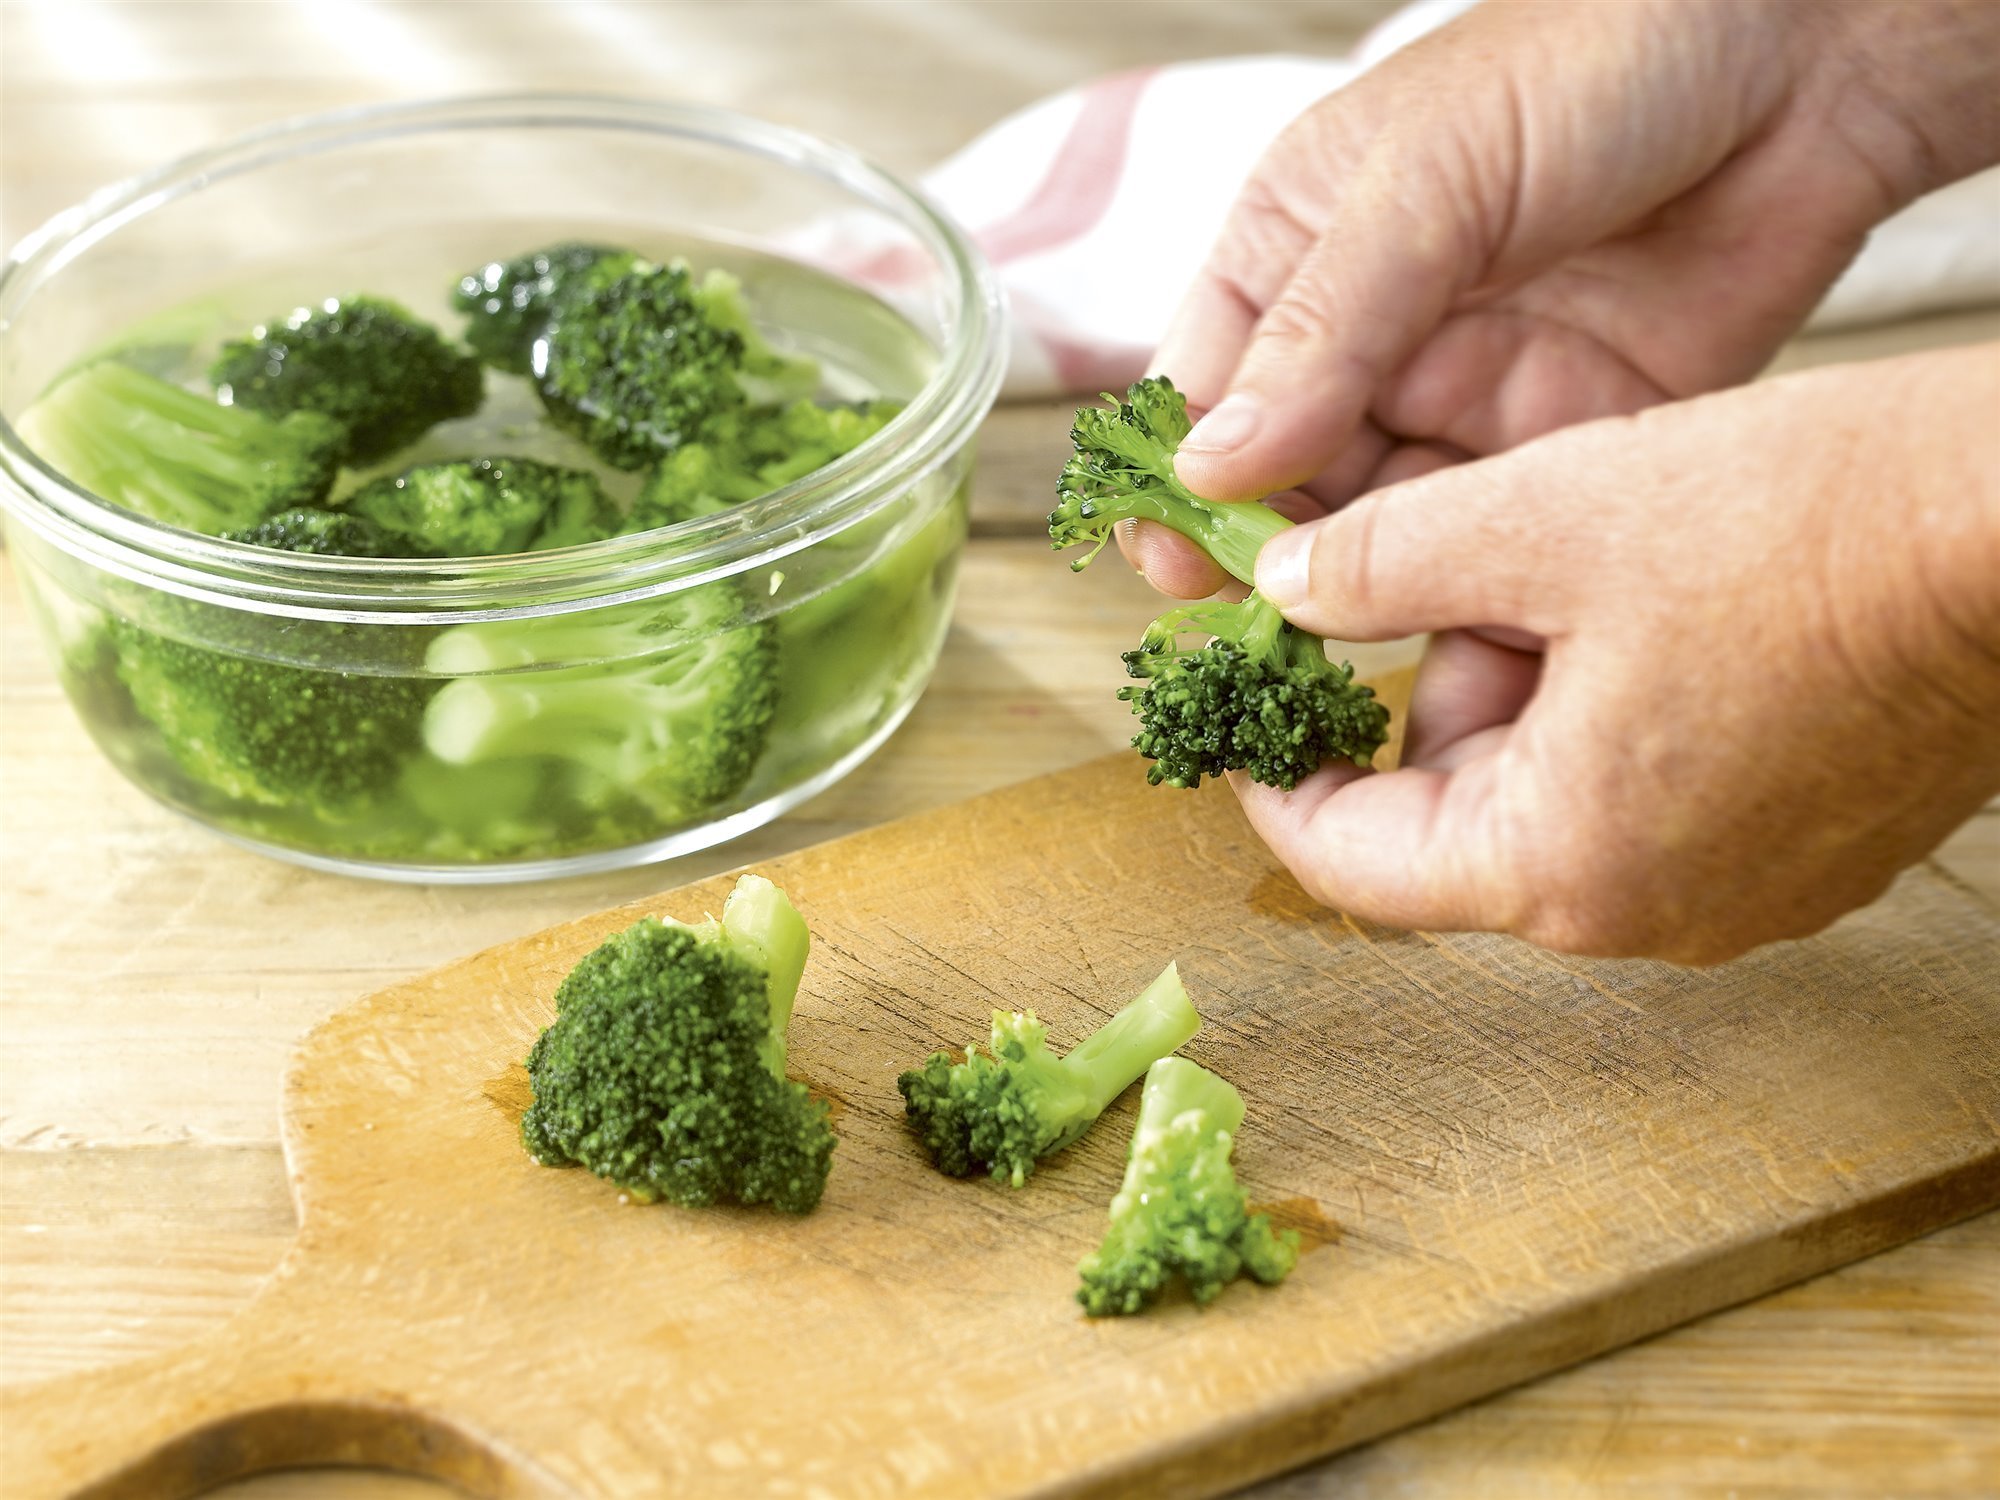 5. Cuece el brócoli